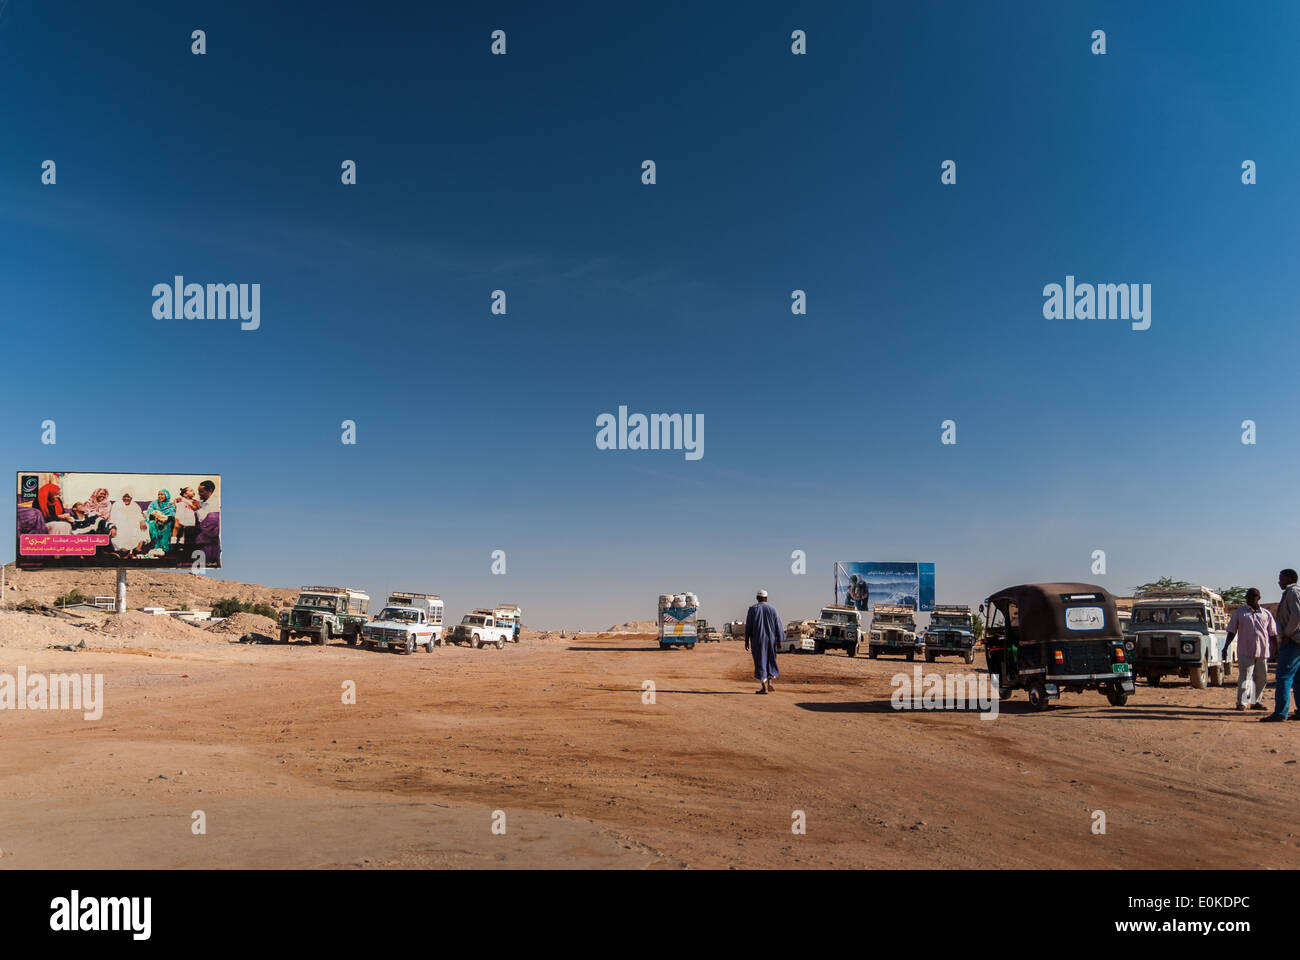 Quitter le port de Wadi Halfa, piste sablonneuse à Wadi Halfa village et divers des taxis attendent des passagers, le nord du Soudan Banque D'Images